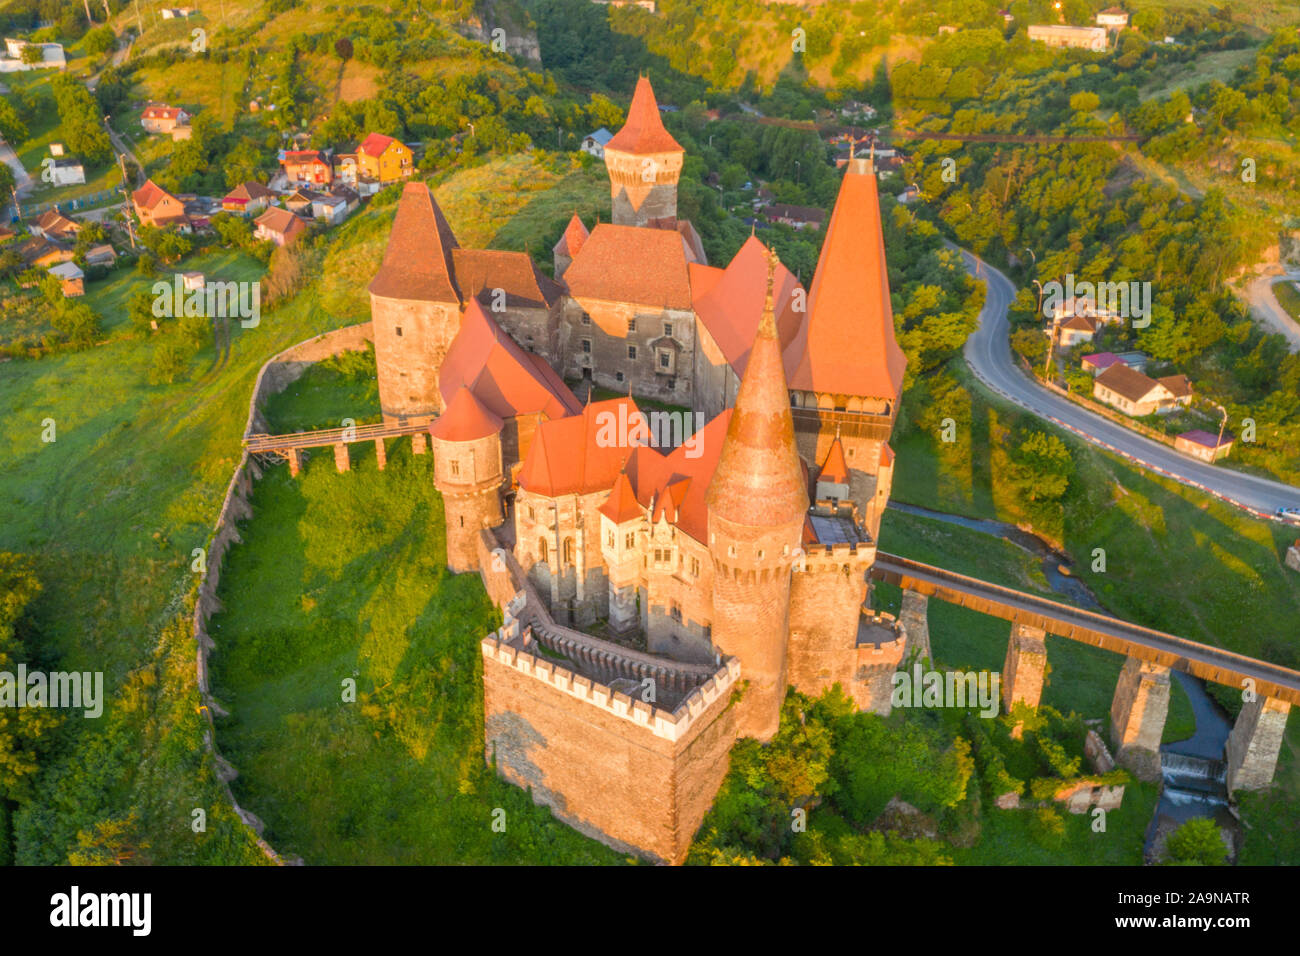 Château Corvin, Transylvanie, Roumanie, à partir de 1456 npour le 17e siècle Gothic Reniassance , Vlad l'Empaleur a été emprisonné ici Banque D'Images